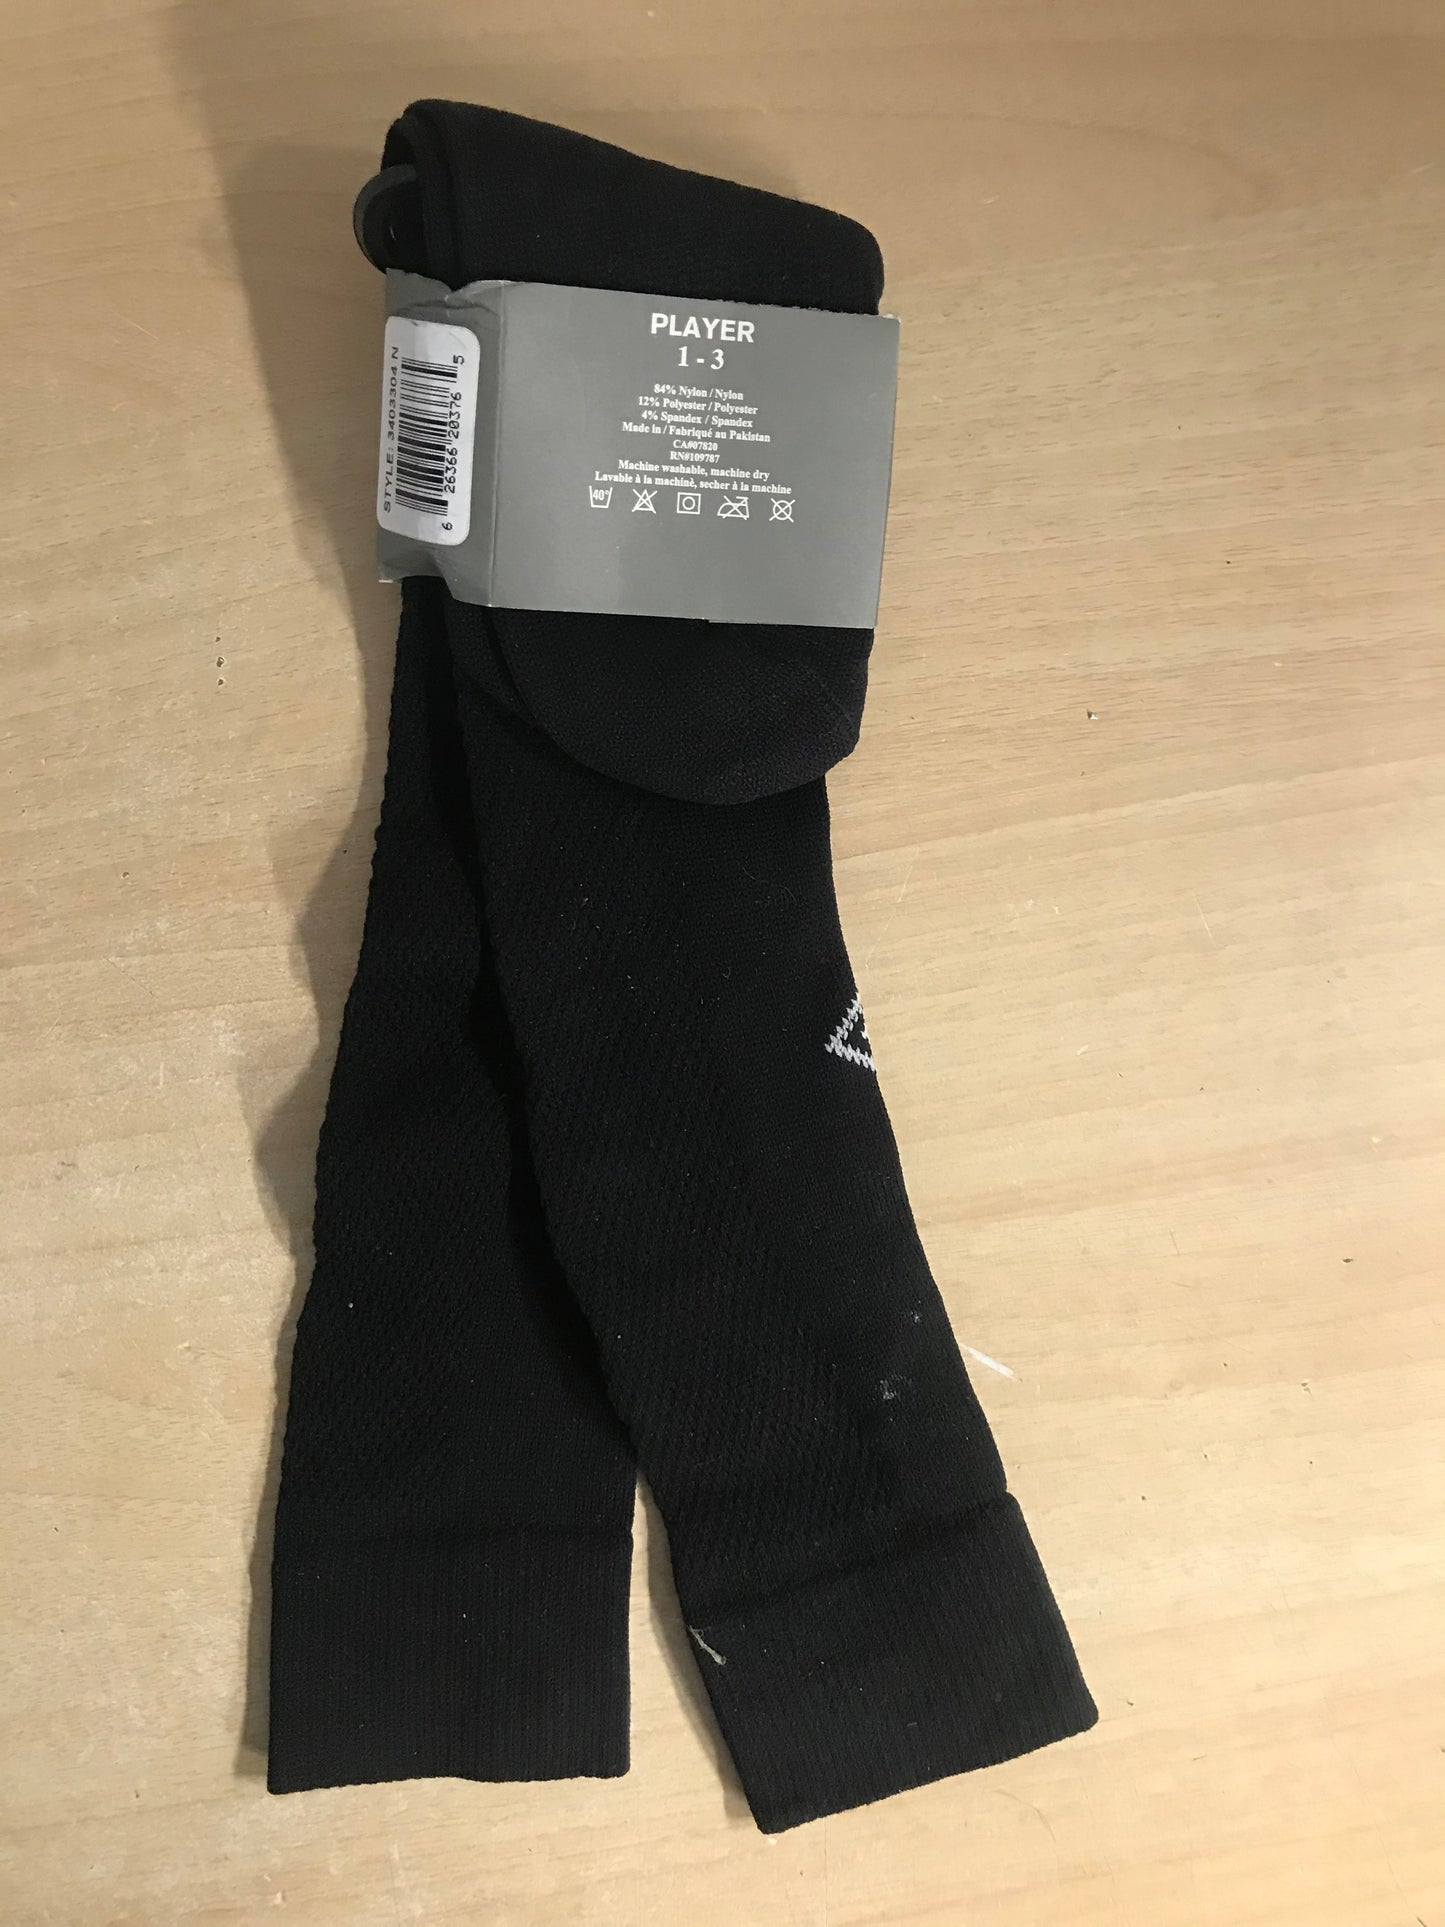 Soccer Socks Child Size shoe 1-3 Umbro Black New